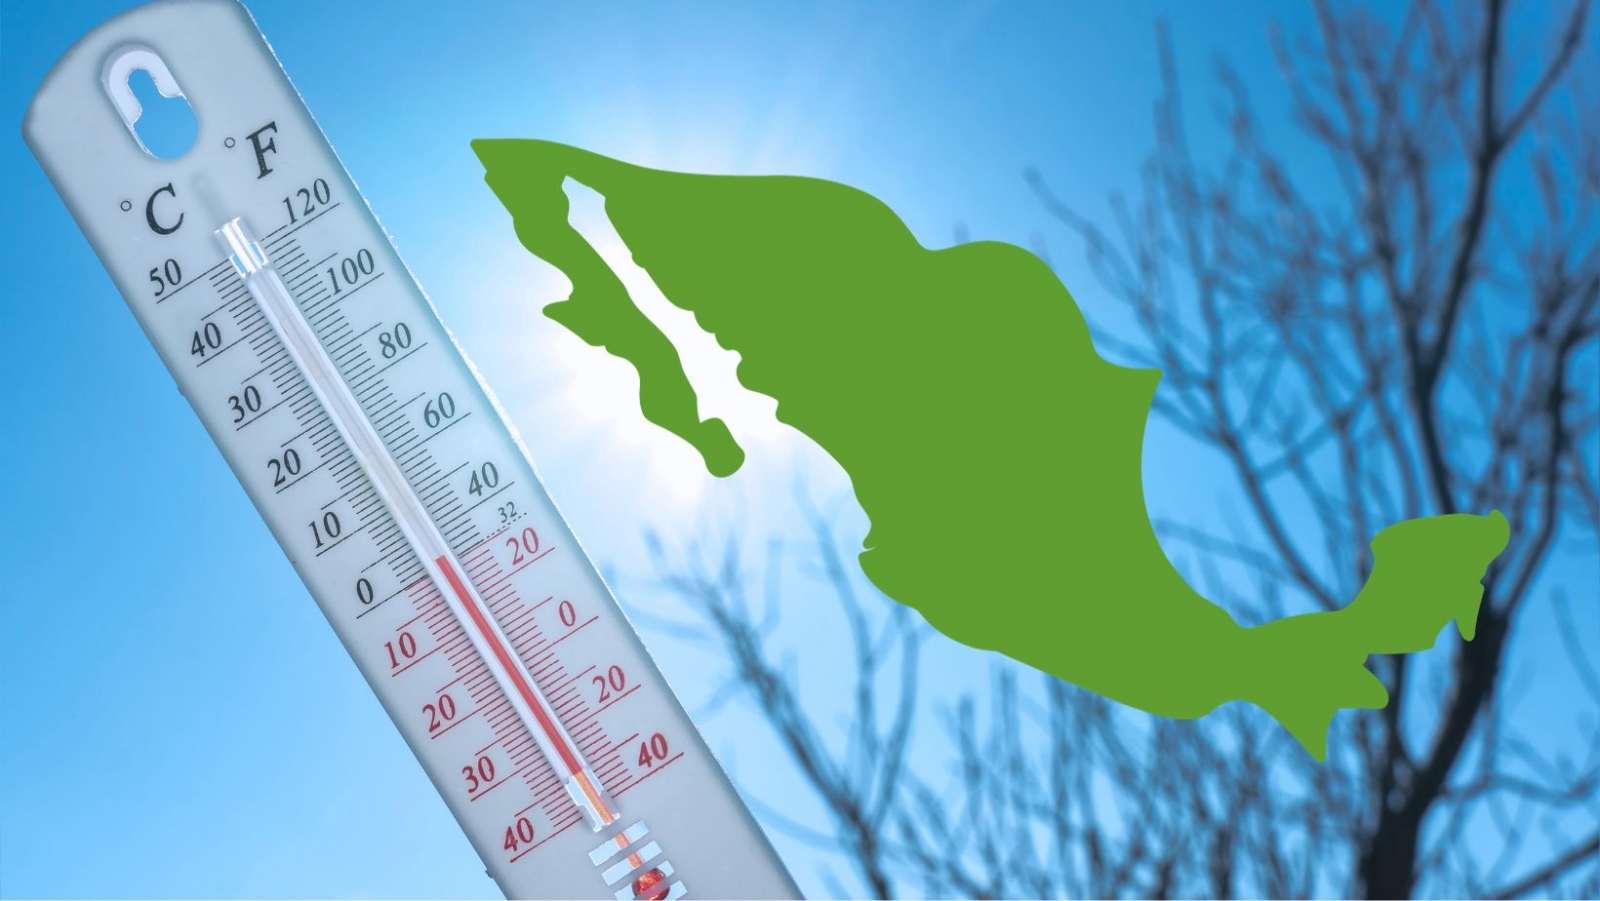 Conagua alerta bajas temperaturas por entrada del Frente Frío 7 en nueve estados